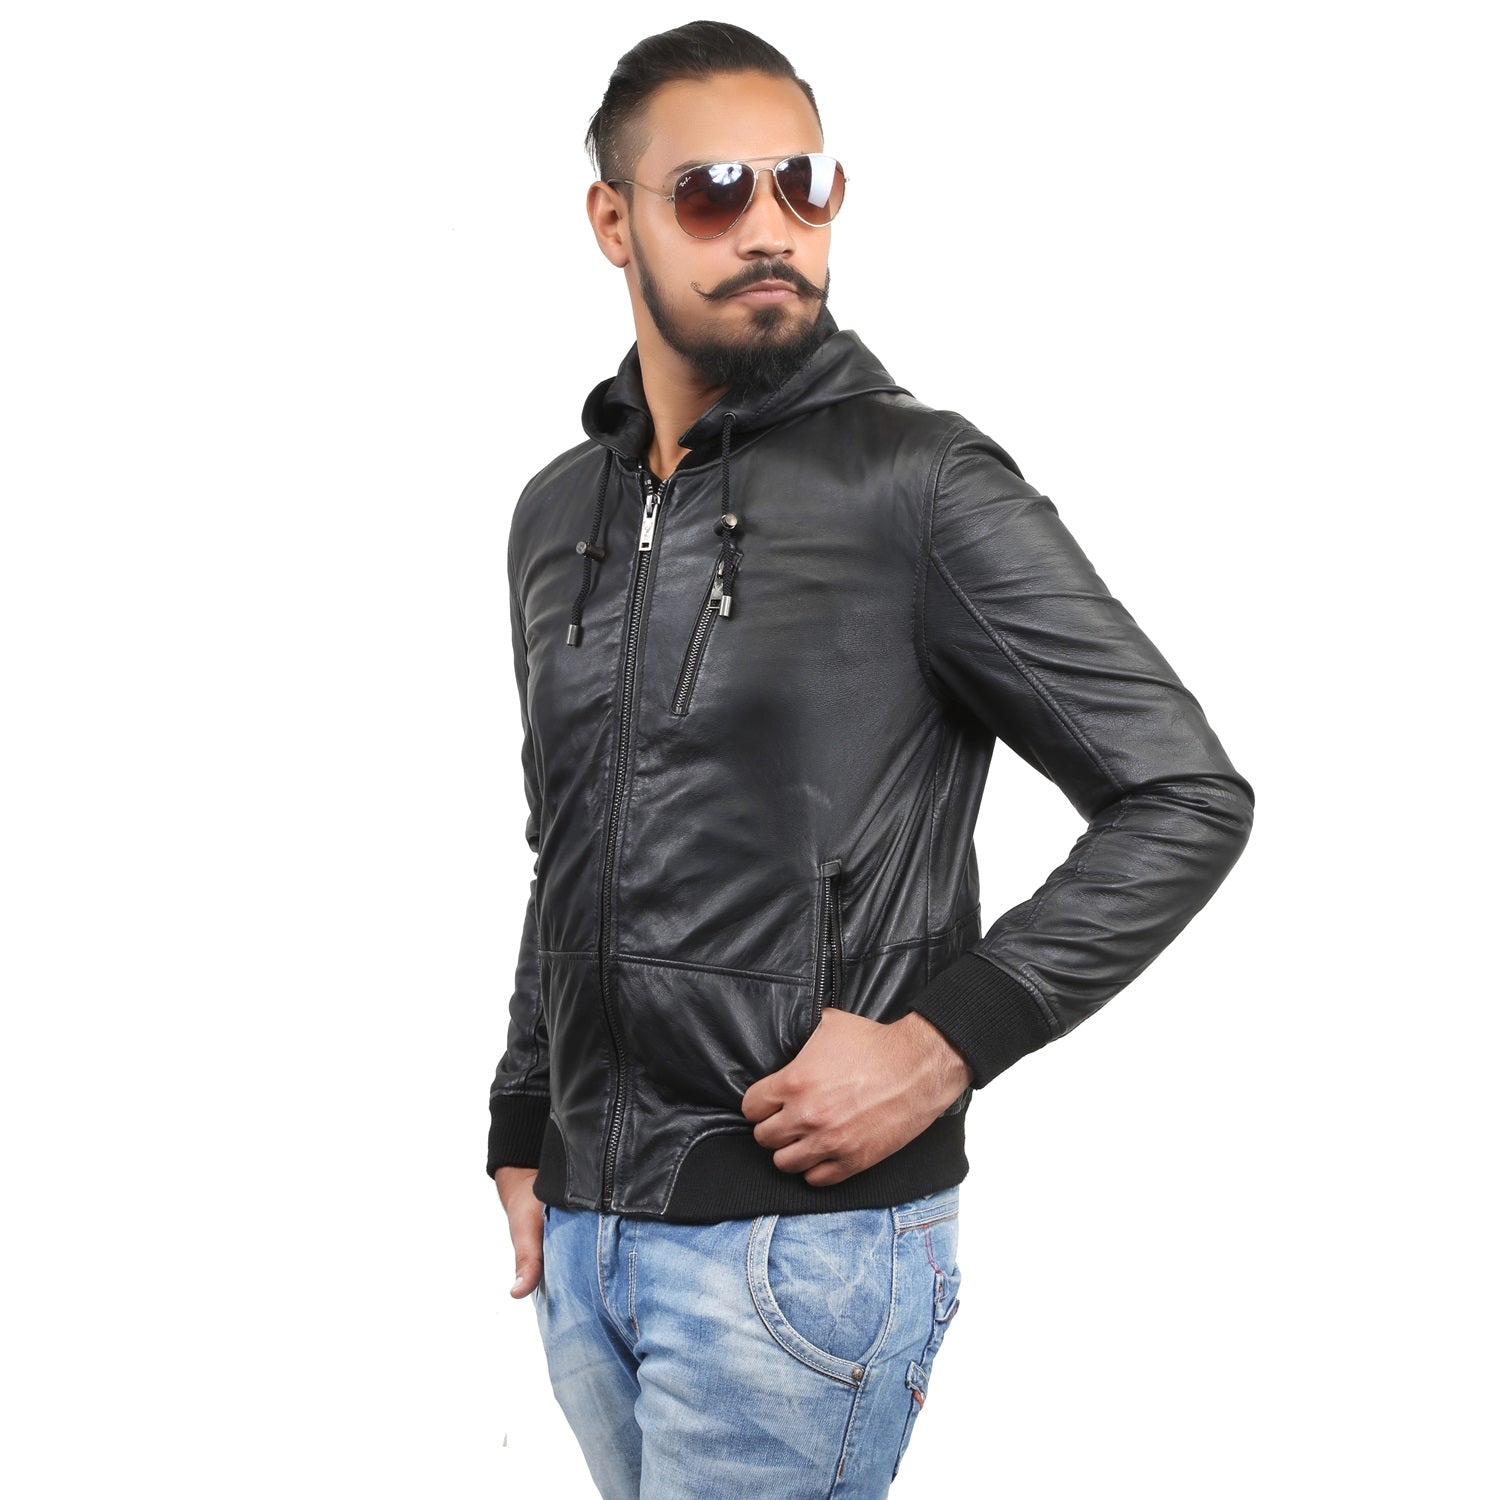 Bareskin Men'S Hoodie Style Black Leather Jacket